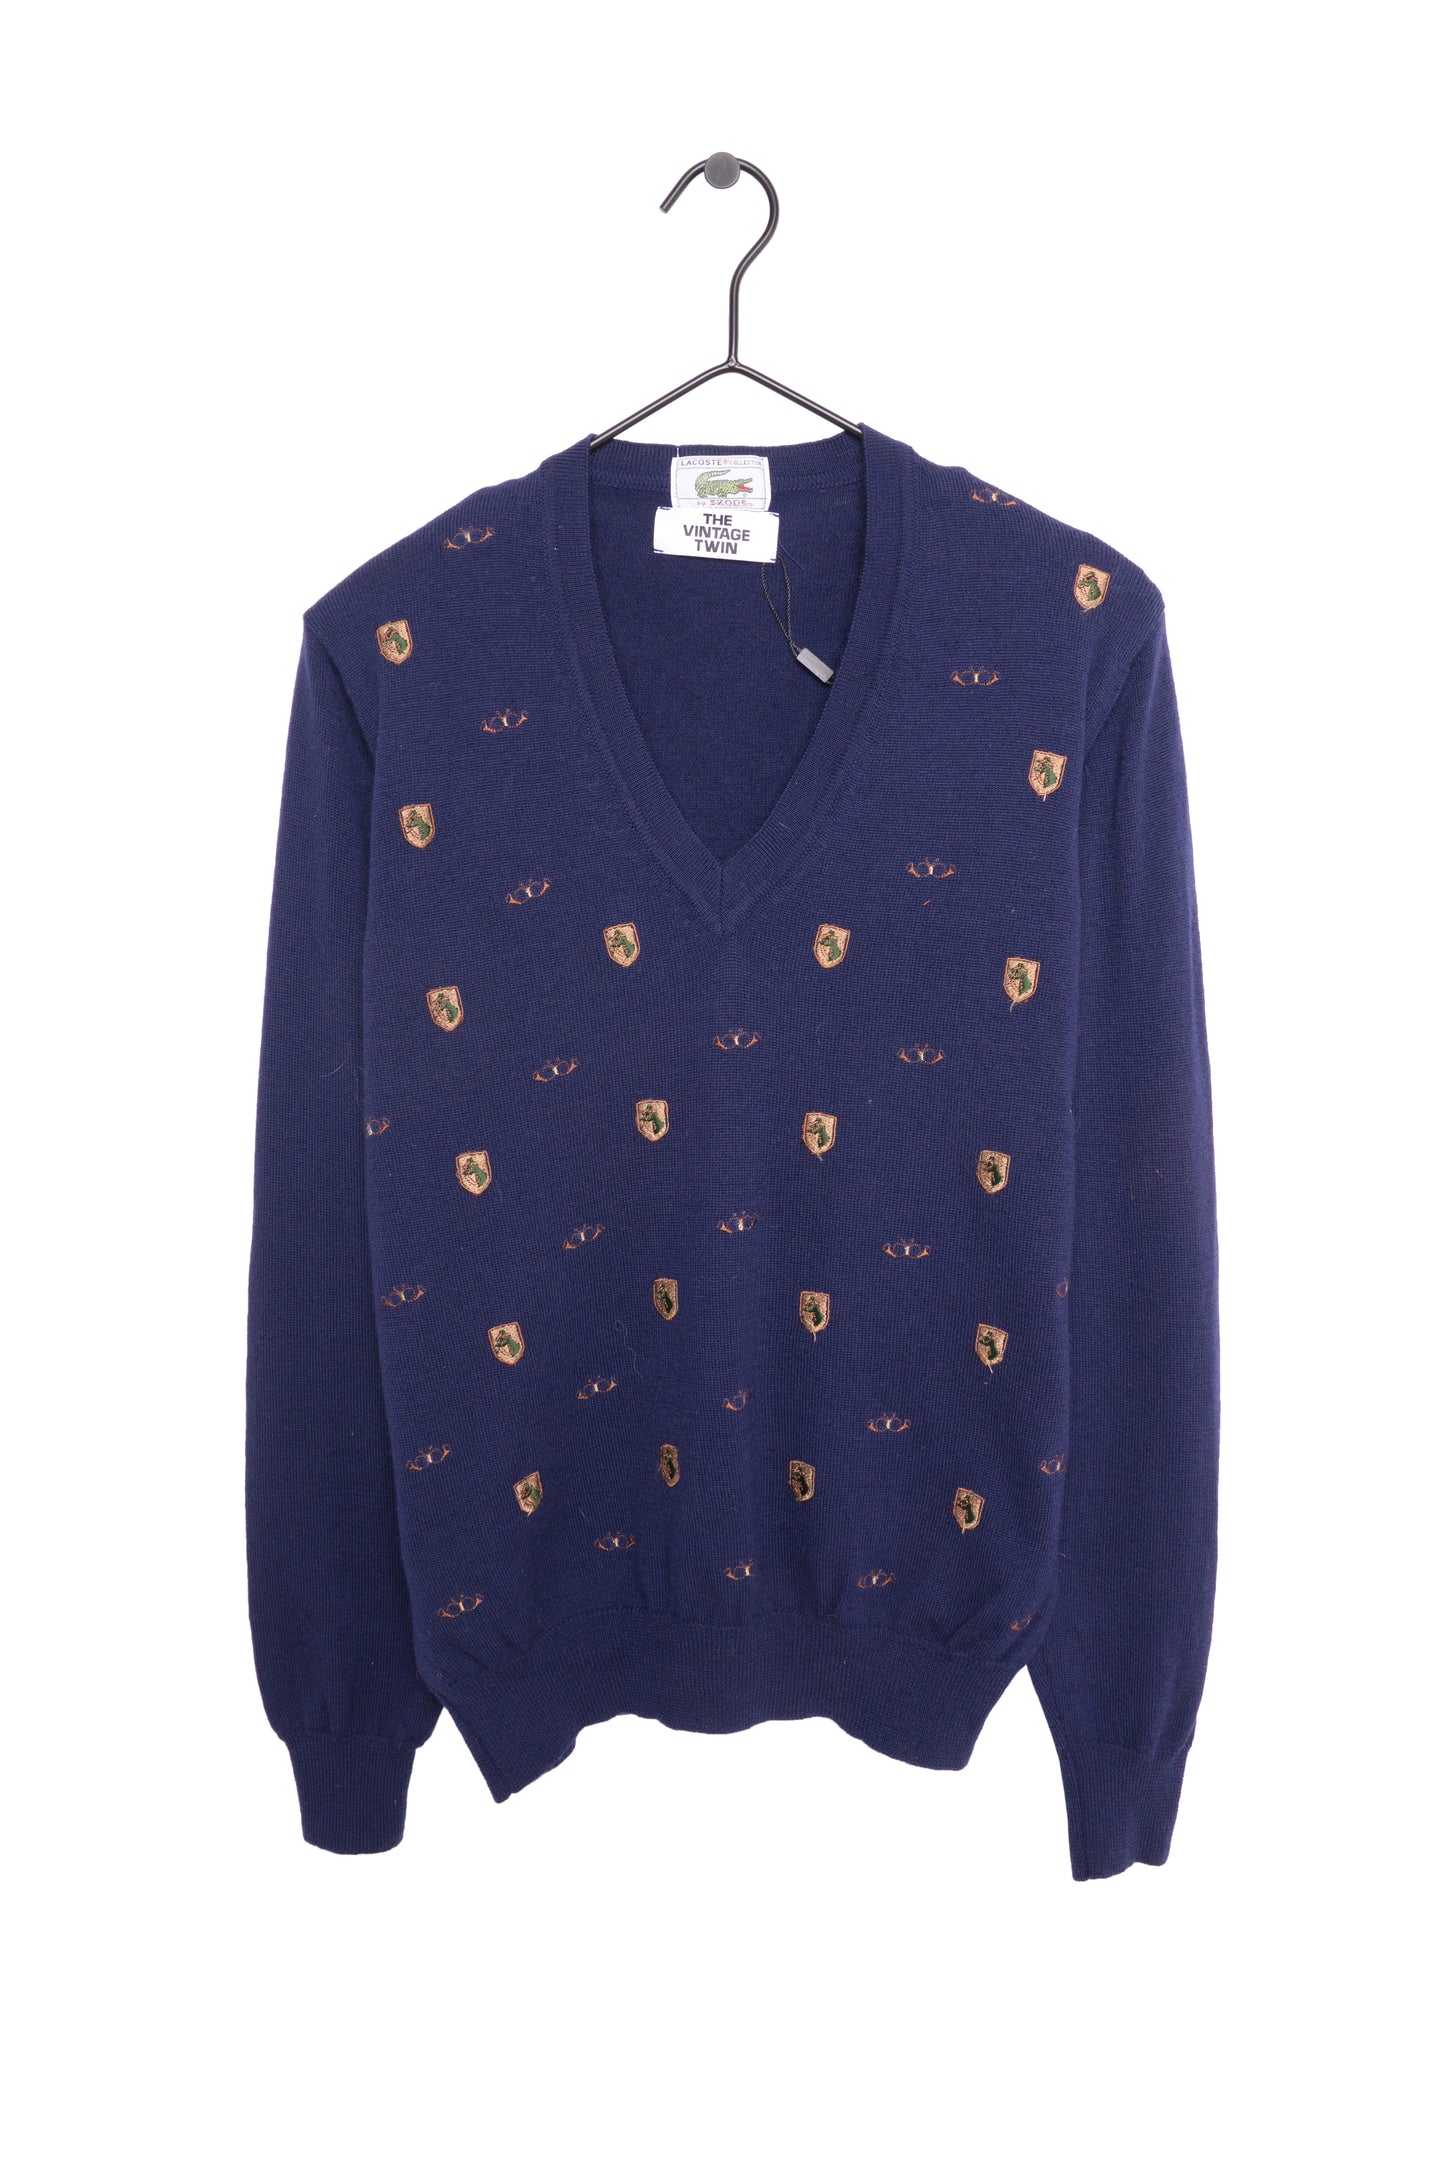 1970s Lacoste Wool Sweater